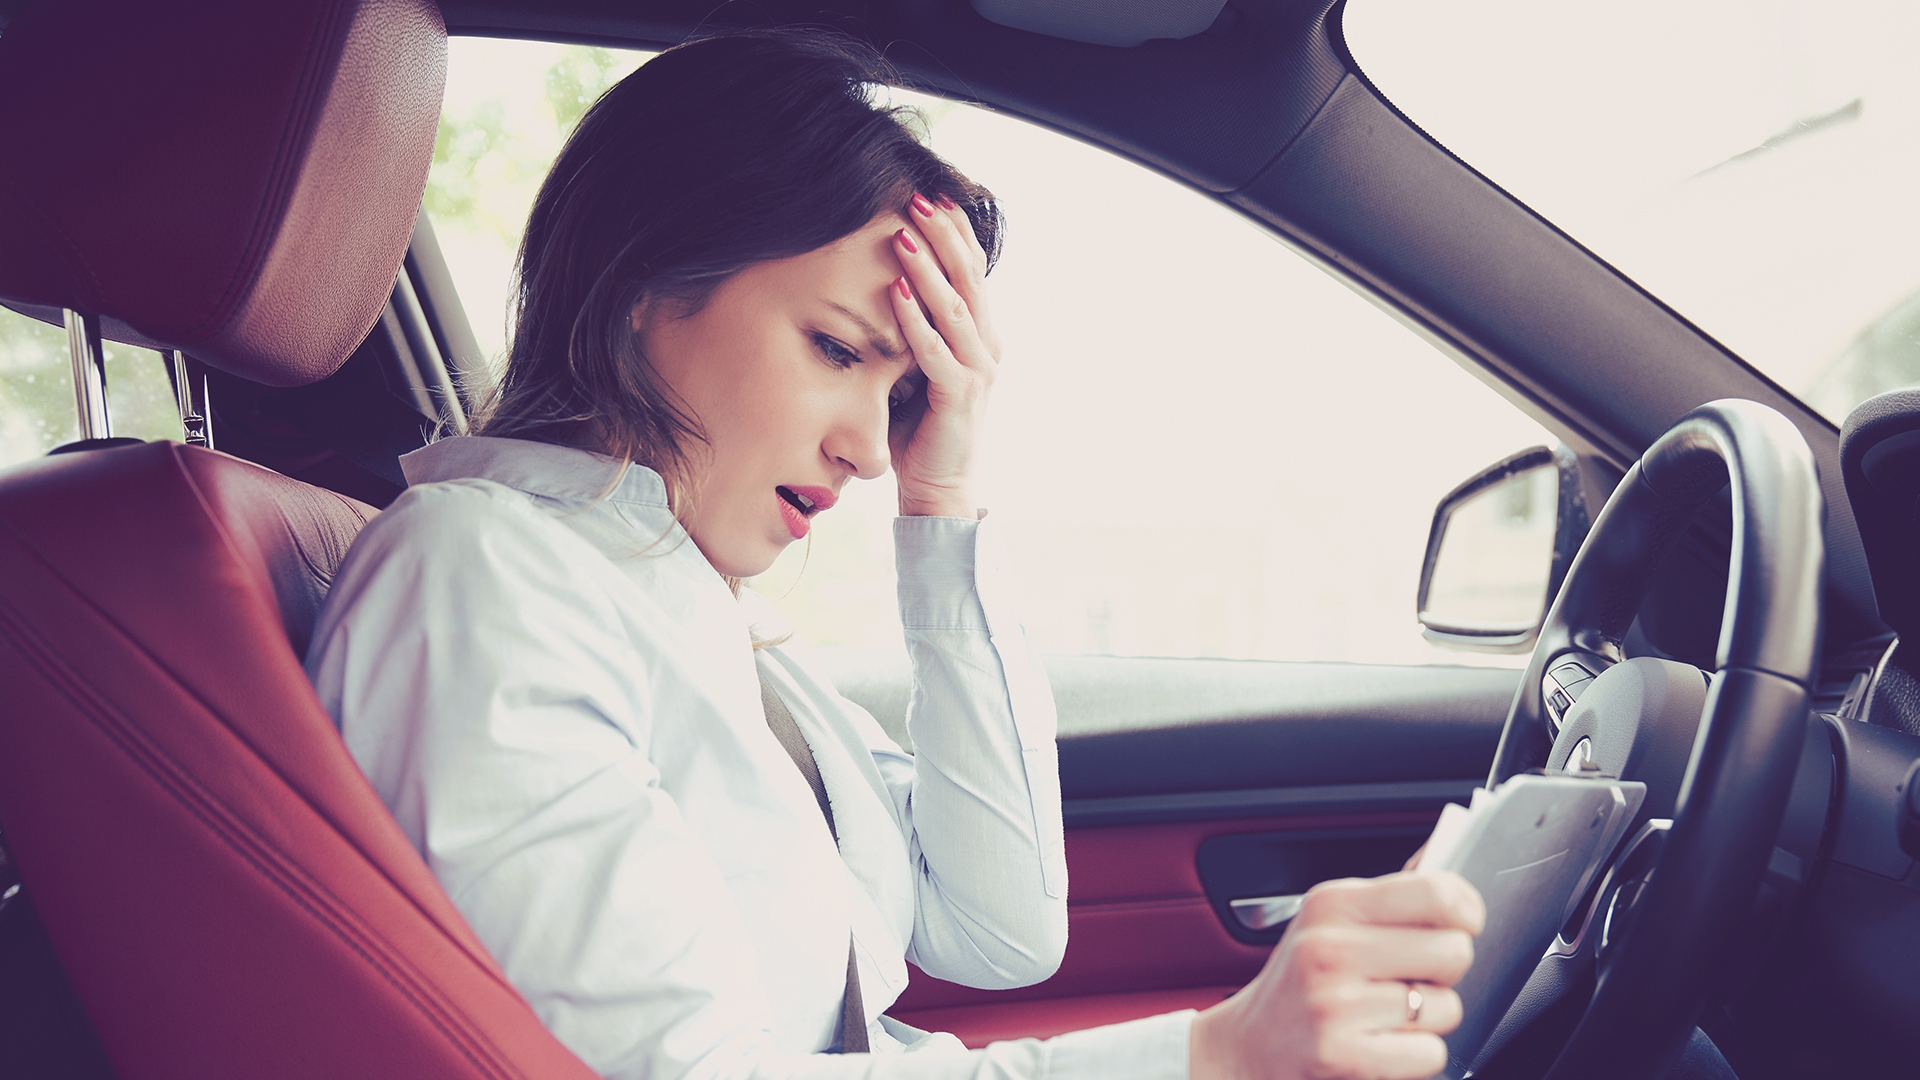 woman looking stressed behind wheel of car